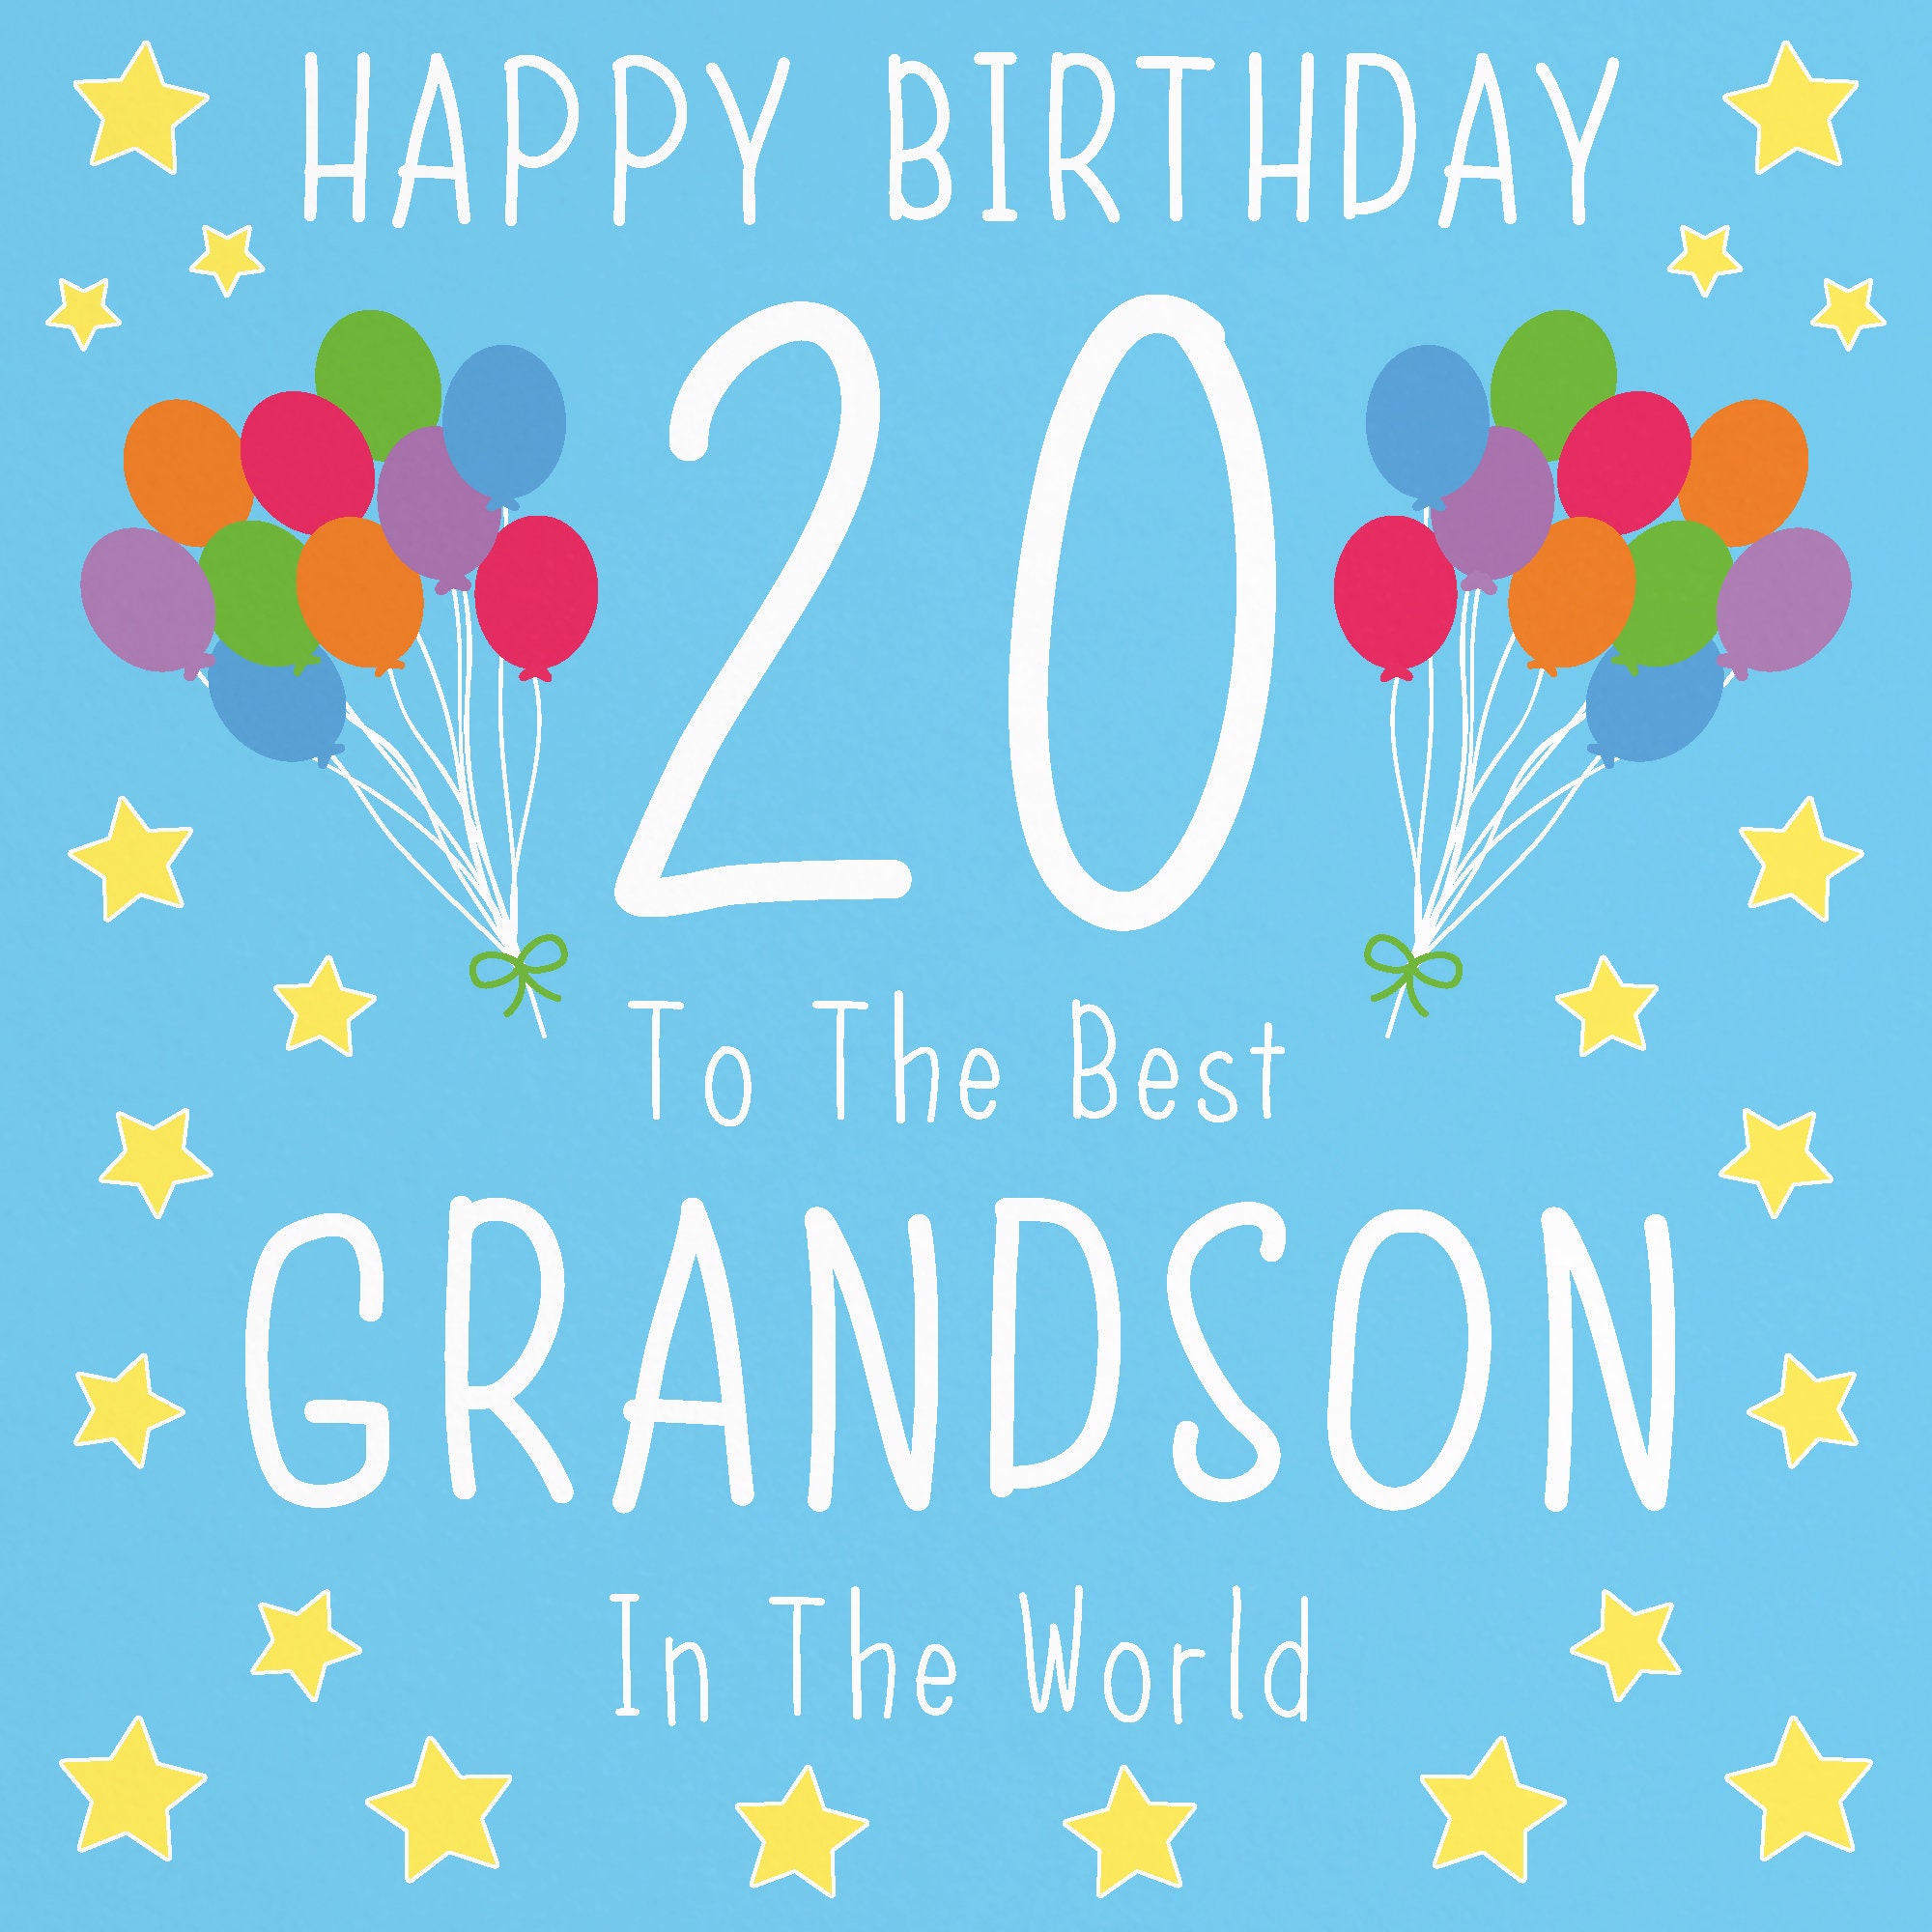 Grandson 20th Birthday Card Happy Birthday 20 to the Etsy UK